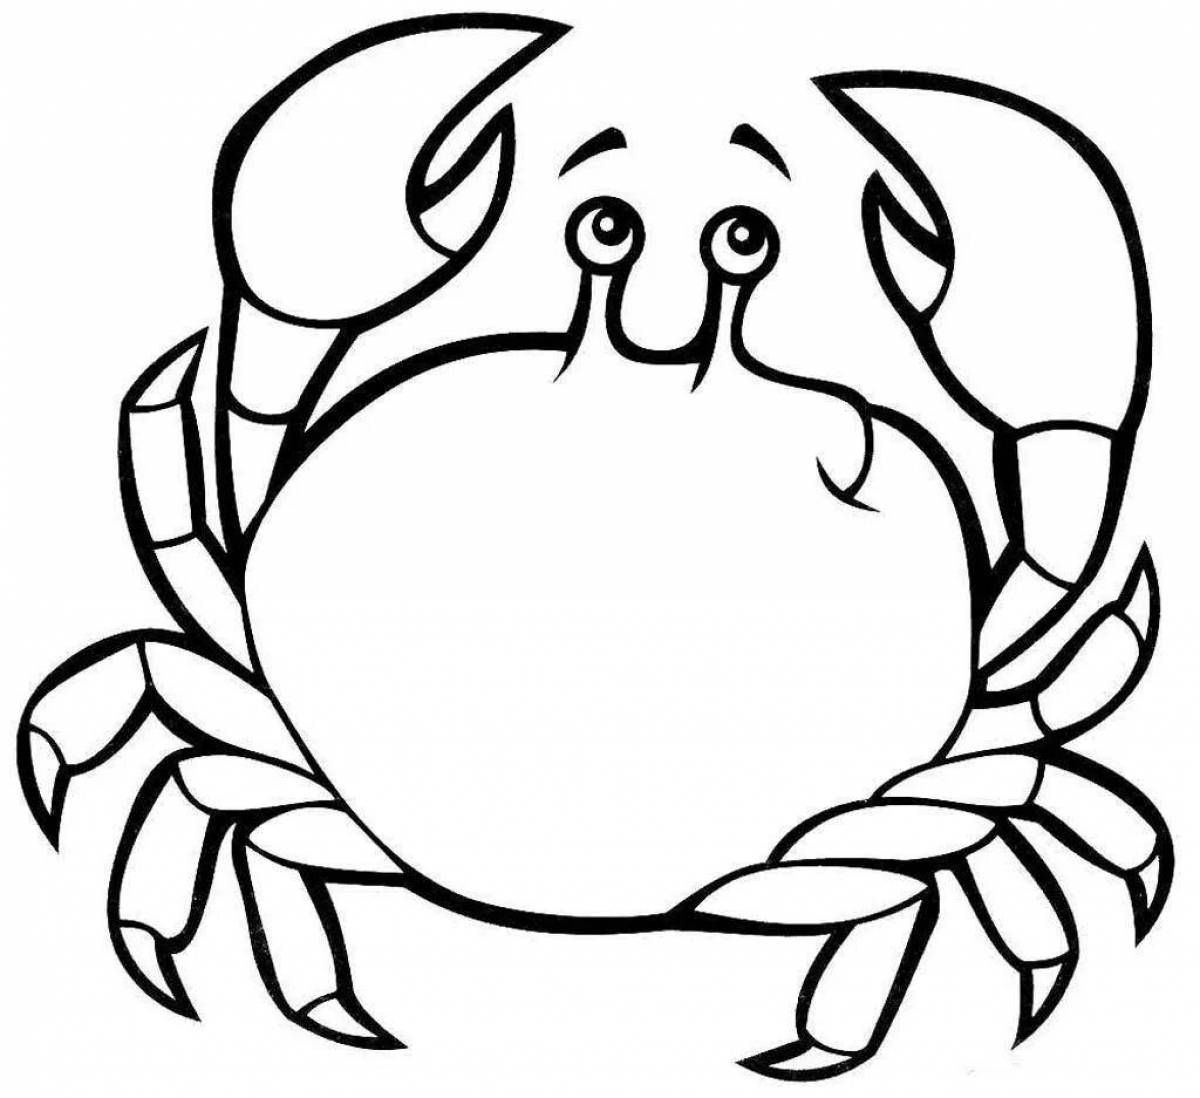 Crab fun coloring for kids